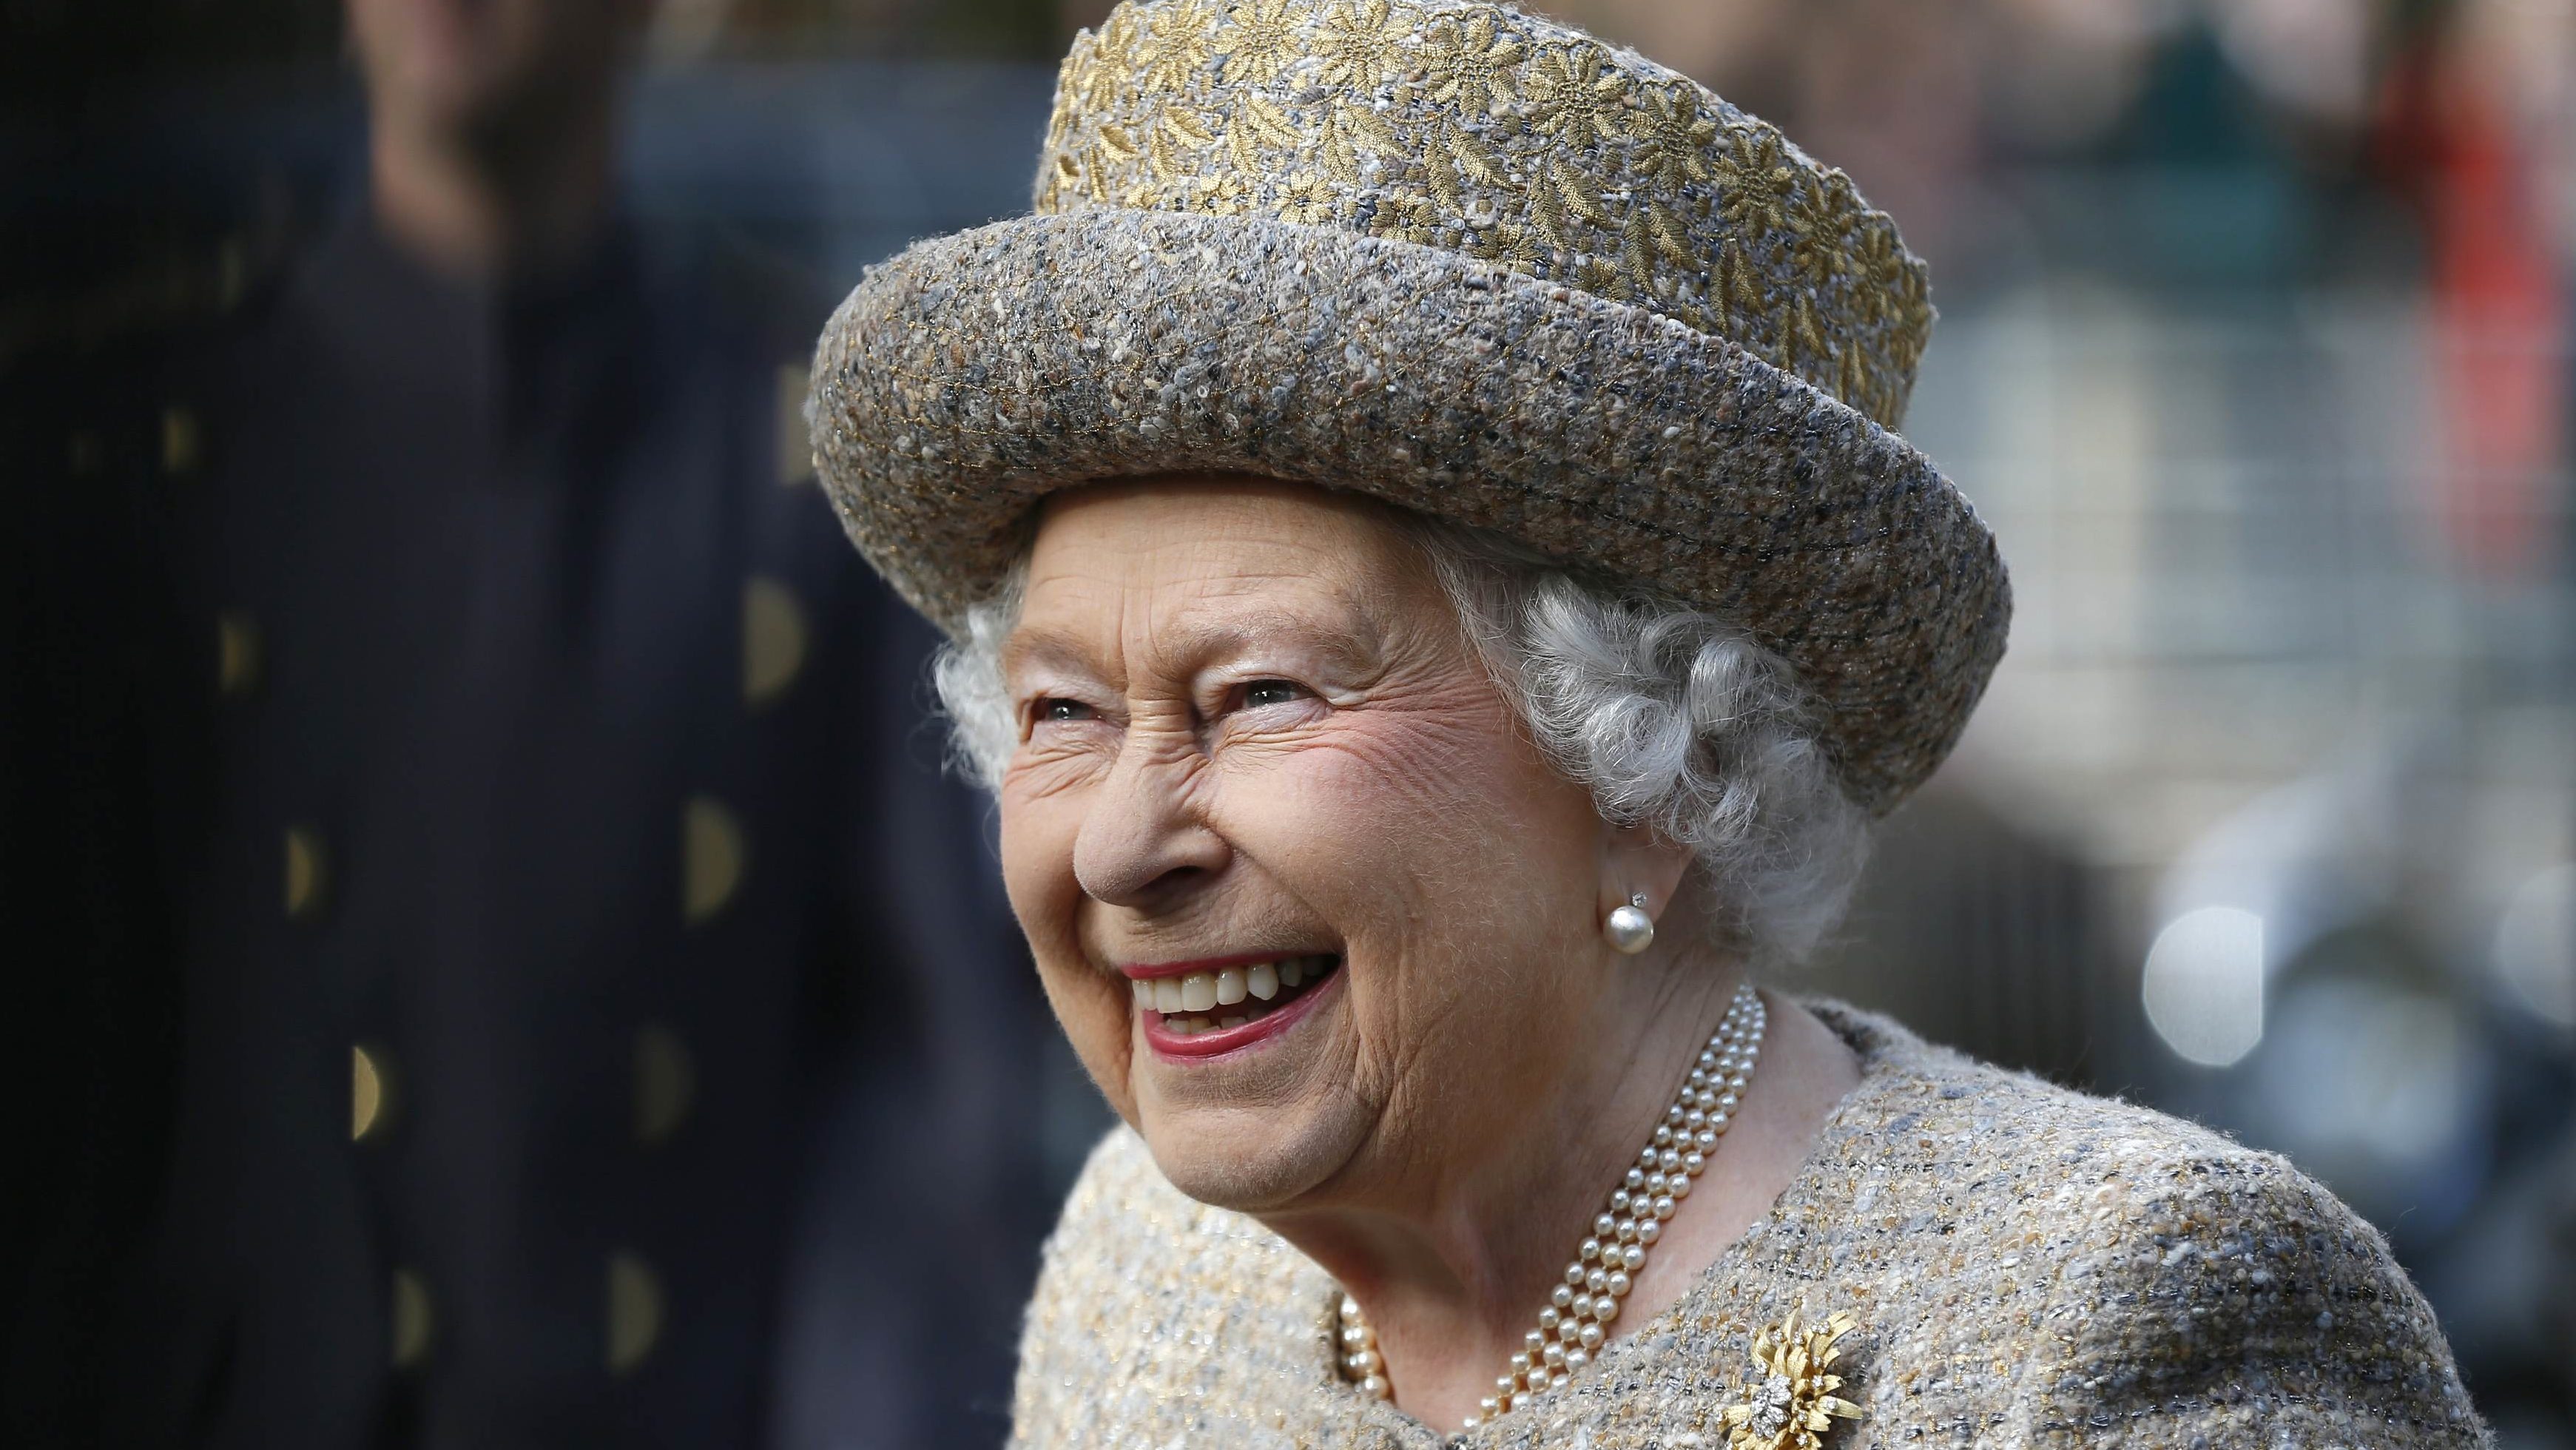 Erzsébet királynő: Visszatérnek majd a jobb napok, s újra a családunkkal lehetünk